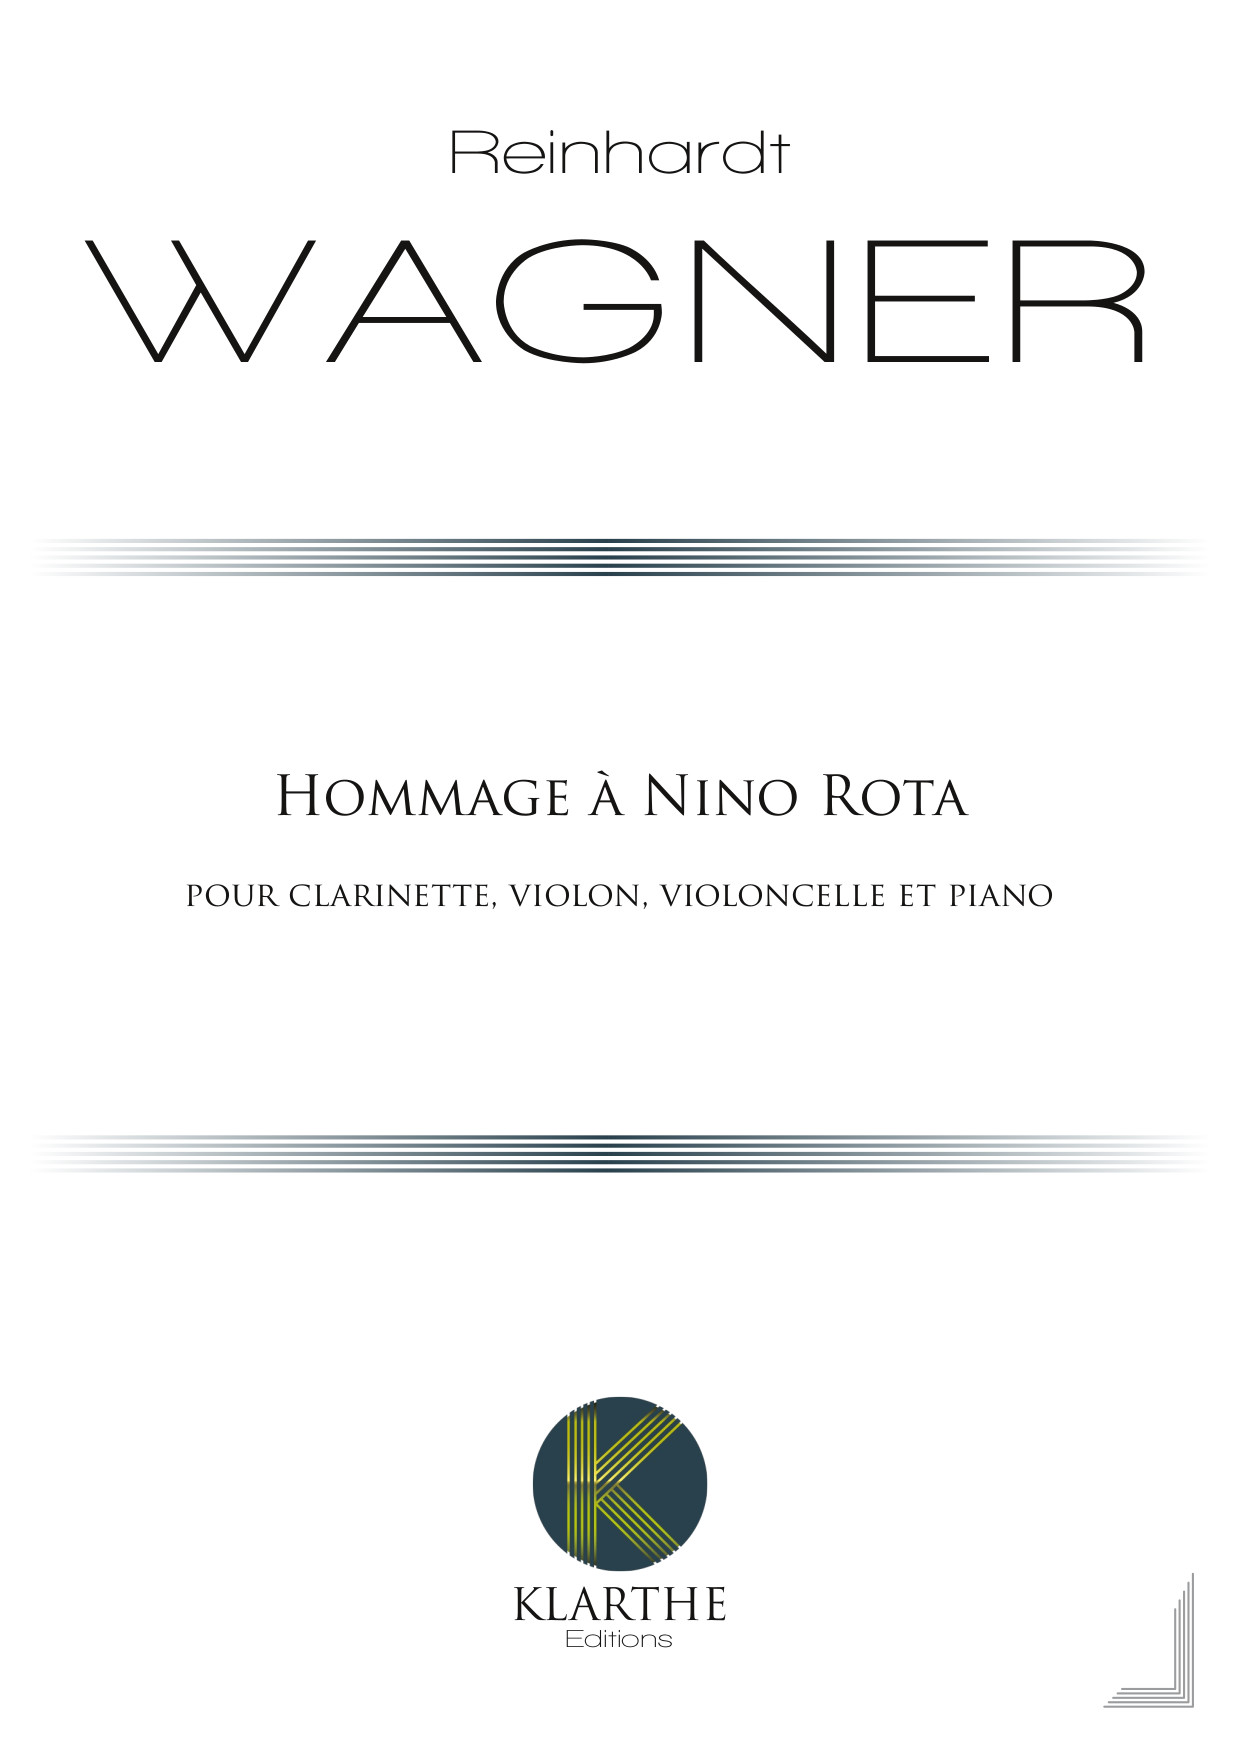 Hommage  Nino Rota (WAGNER REINHARDT)